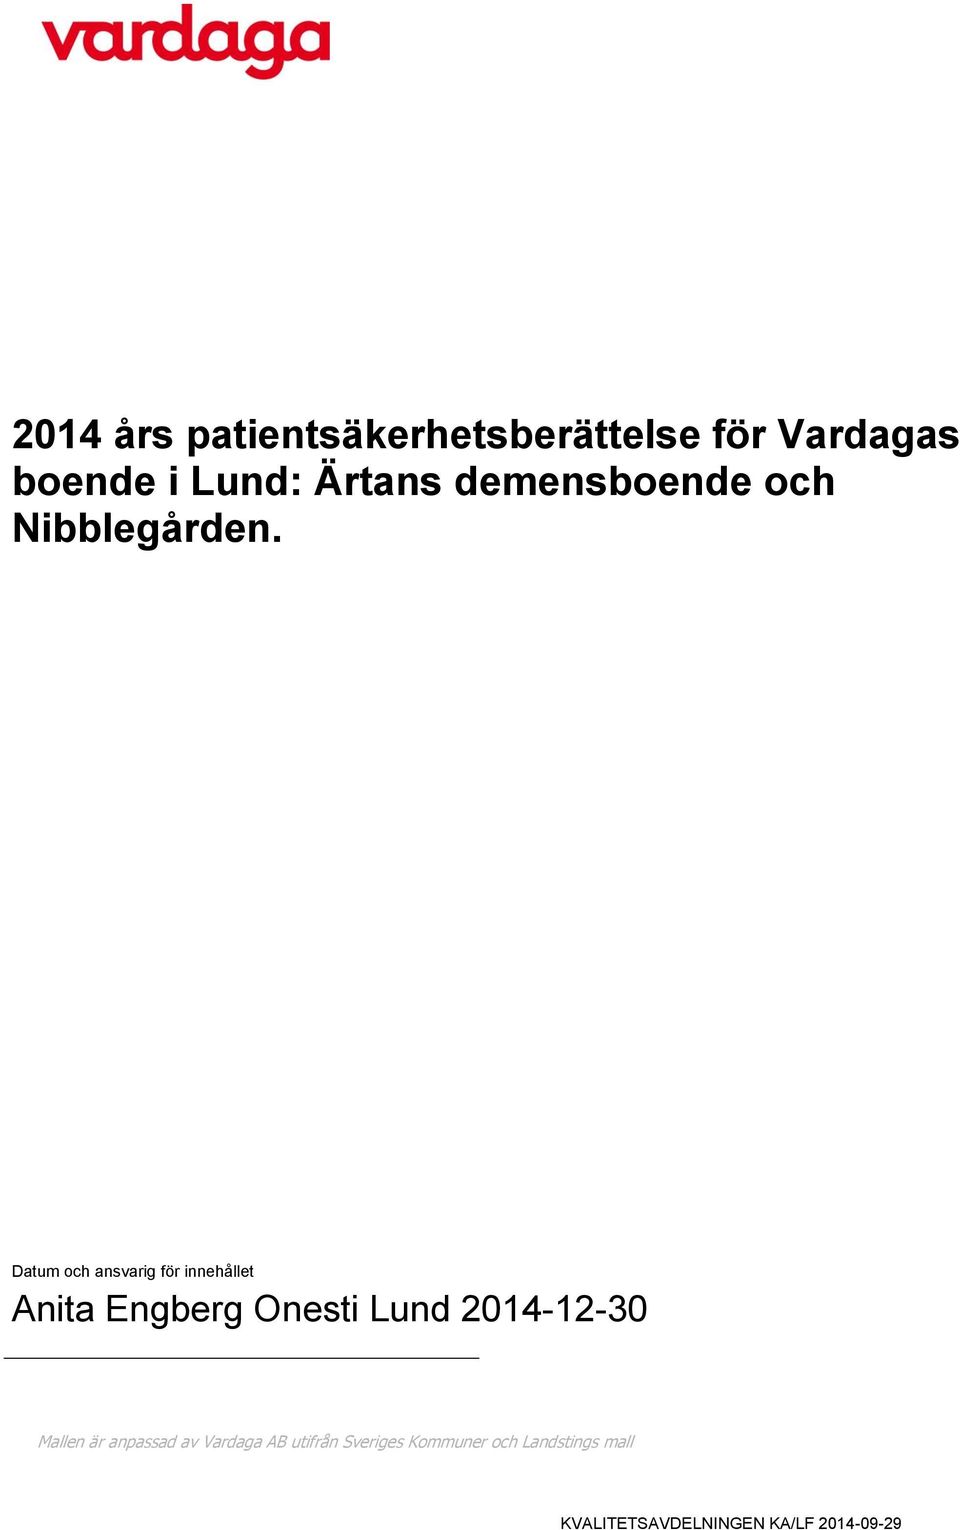 Datum och ansvarig för innehållet Anita Engberg Onesti Lund 2014-12-30